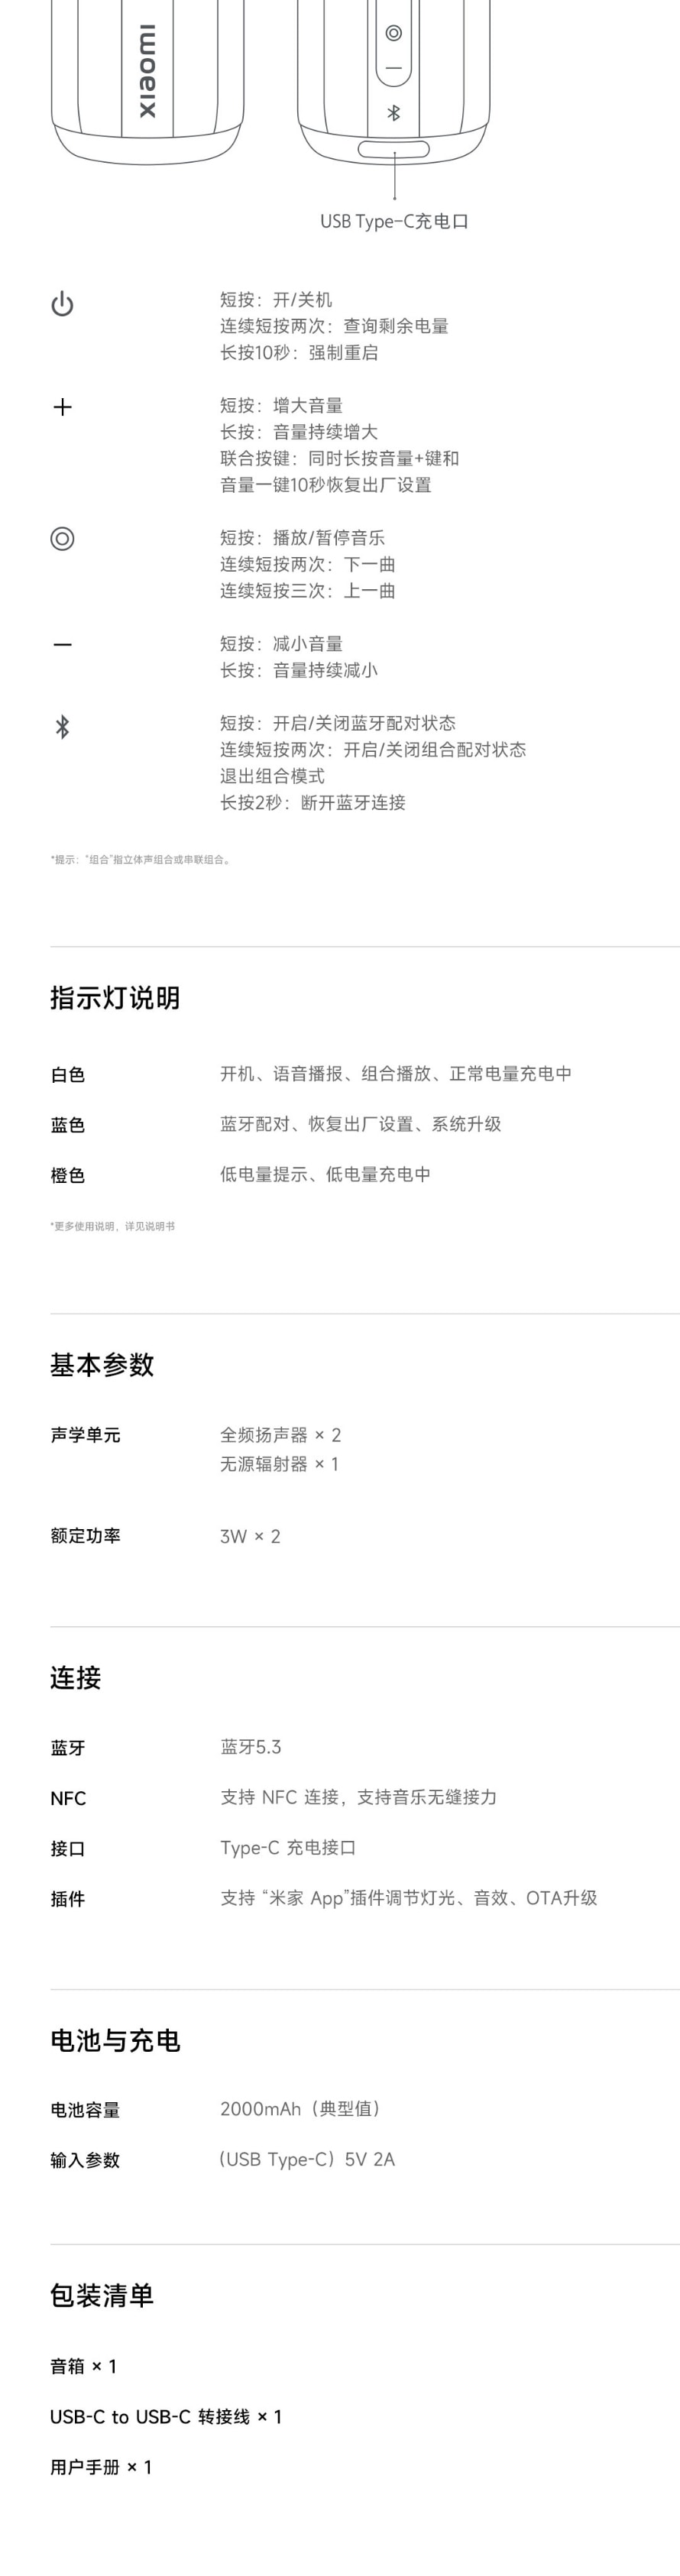 【中国直邮】小米有品 Xiaomi 蓝牙音箱 Mini 黑色